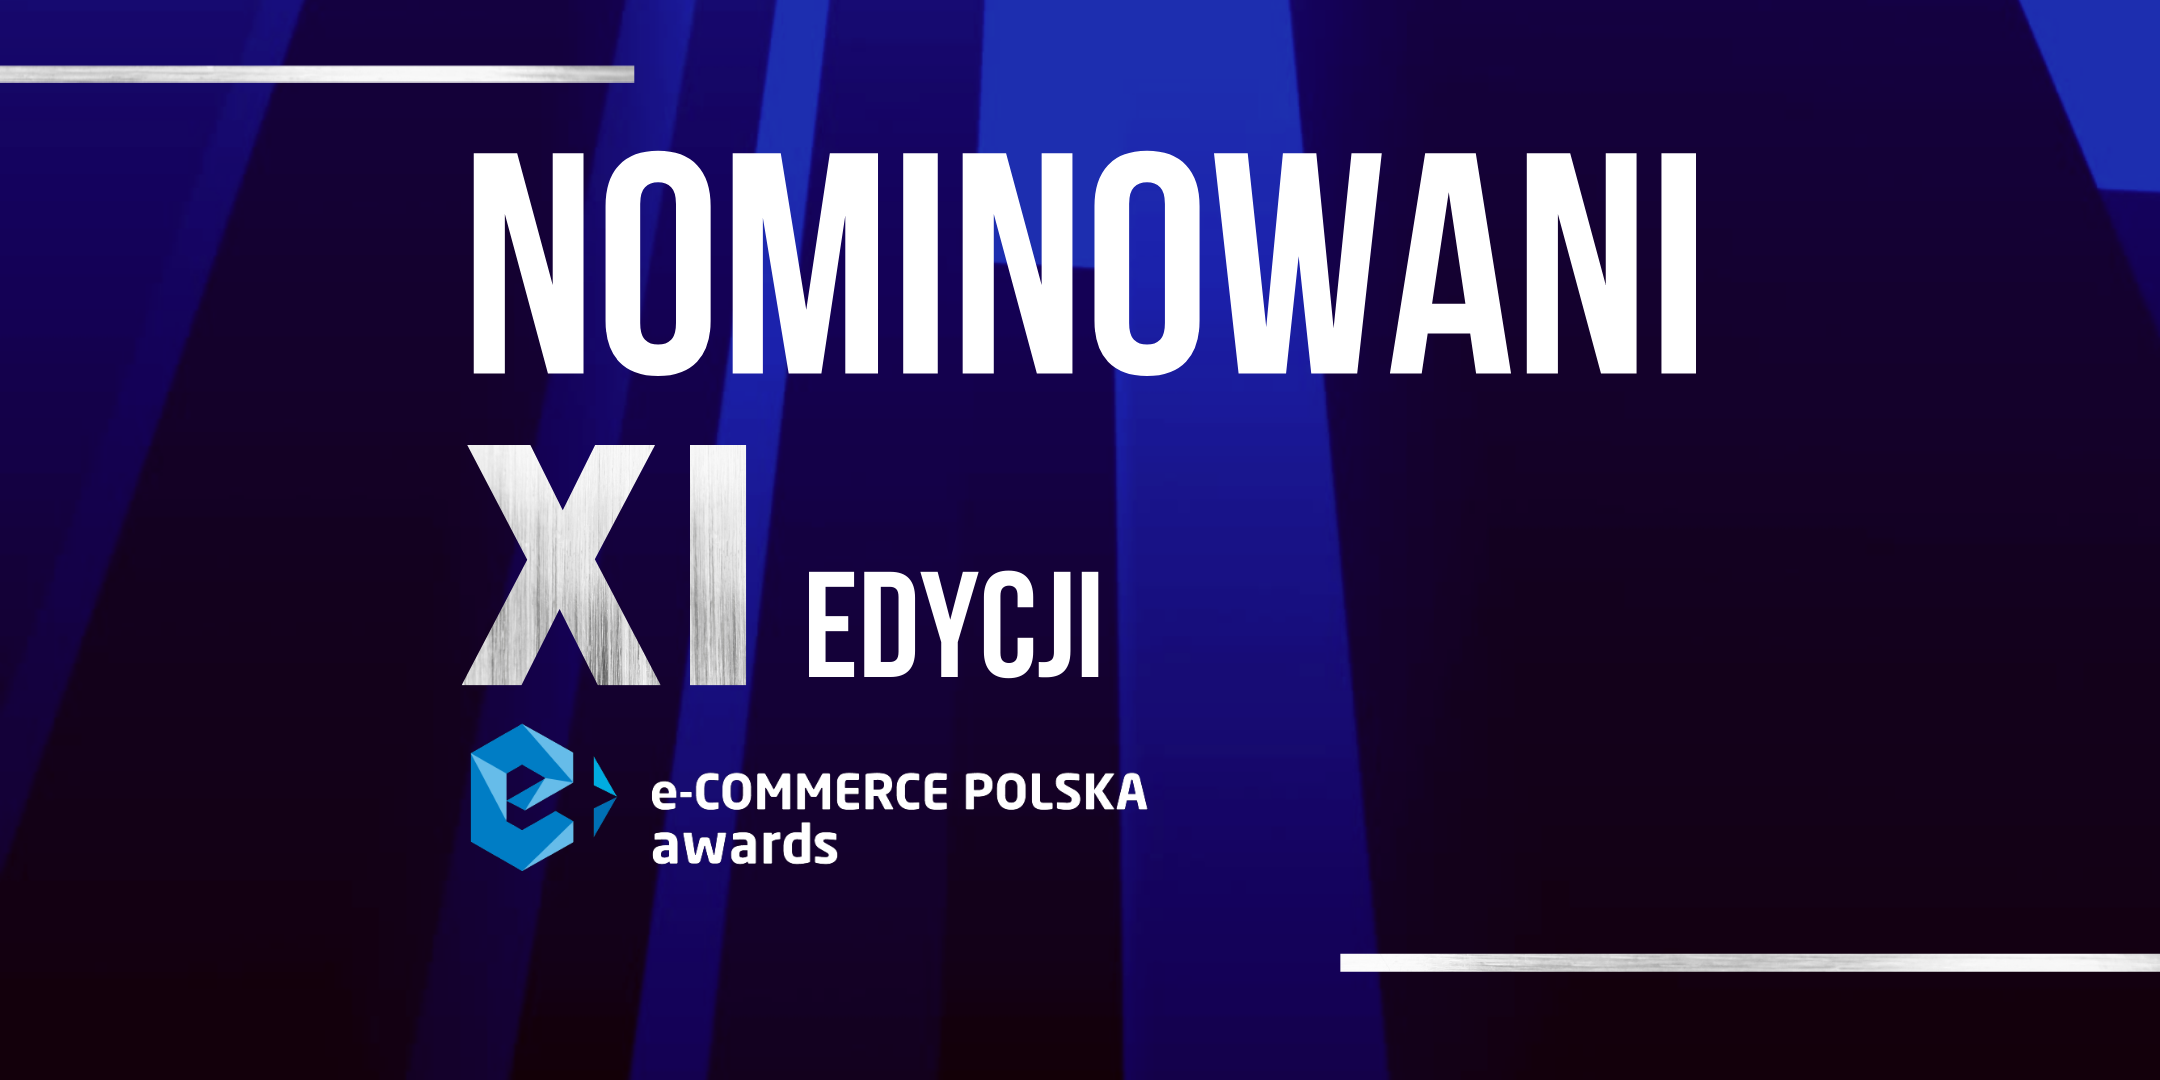 Znamy nominowanych do e-Commerce Polska Awards. Komu 11-ta edycja konkursu przyniesie największe laury?